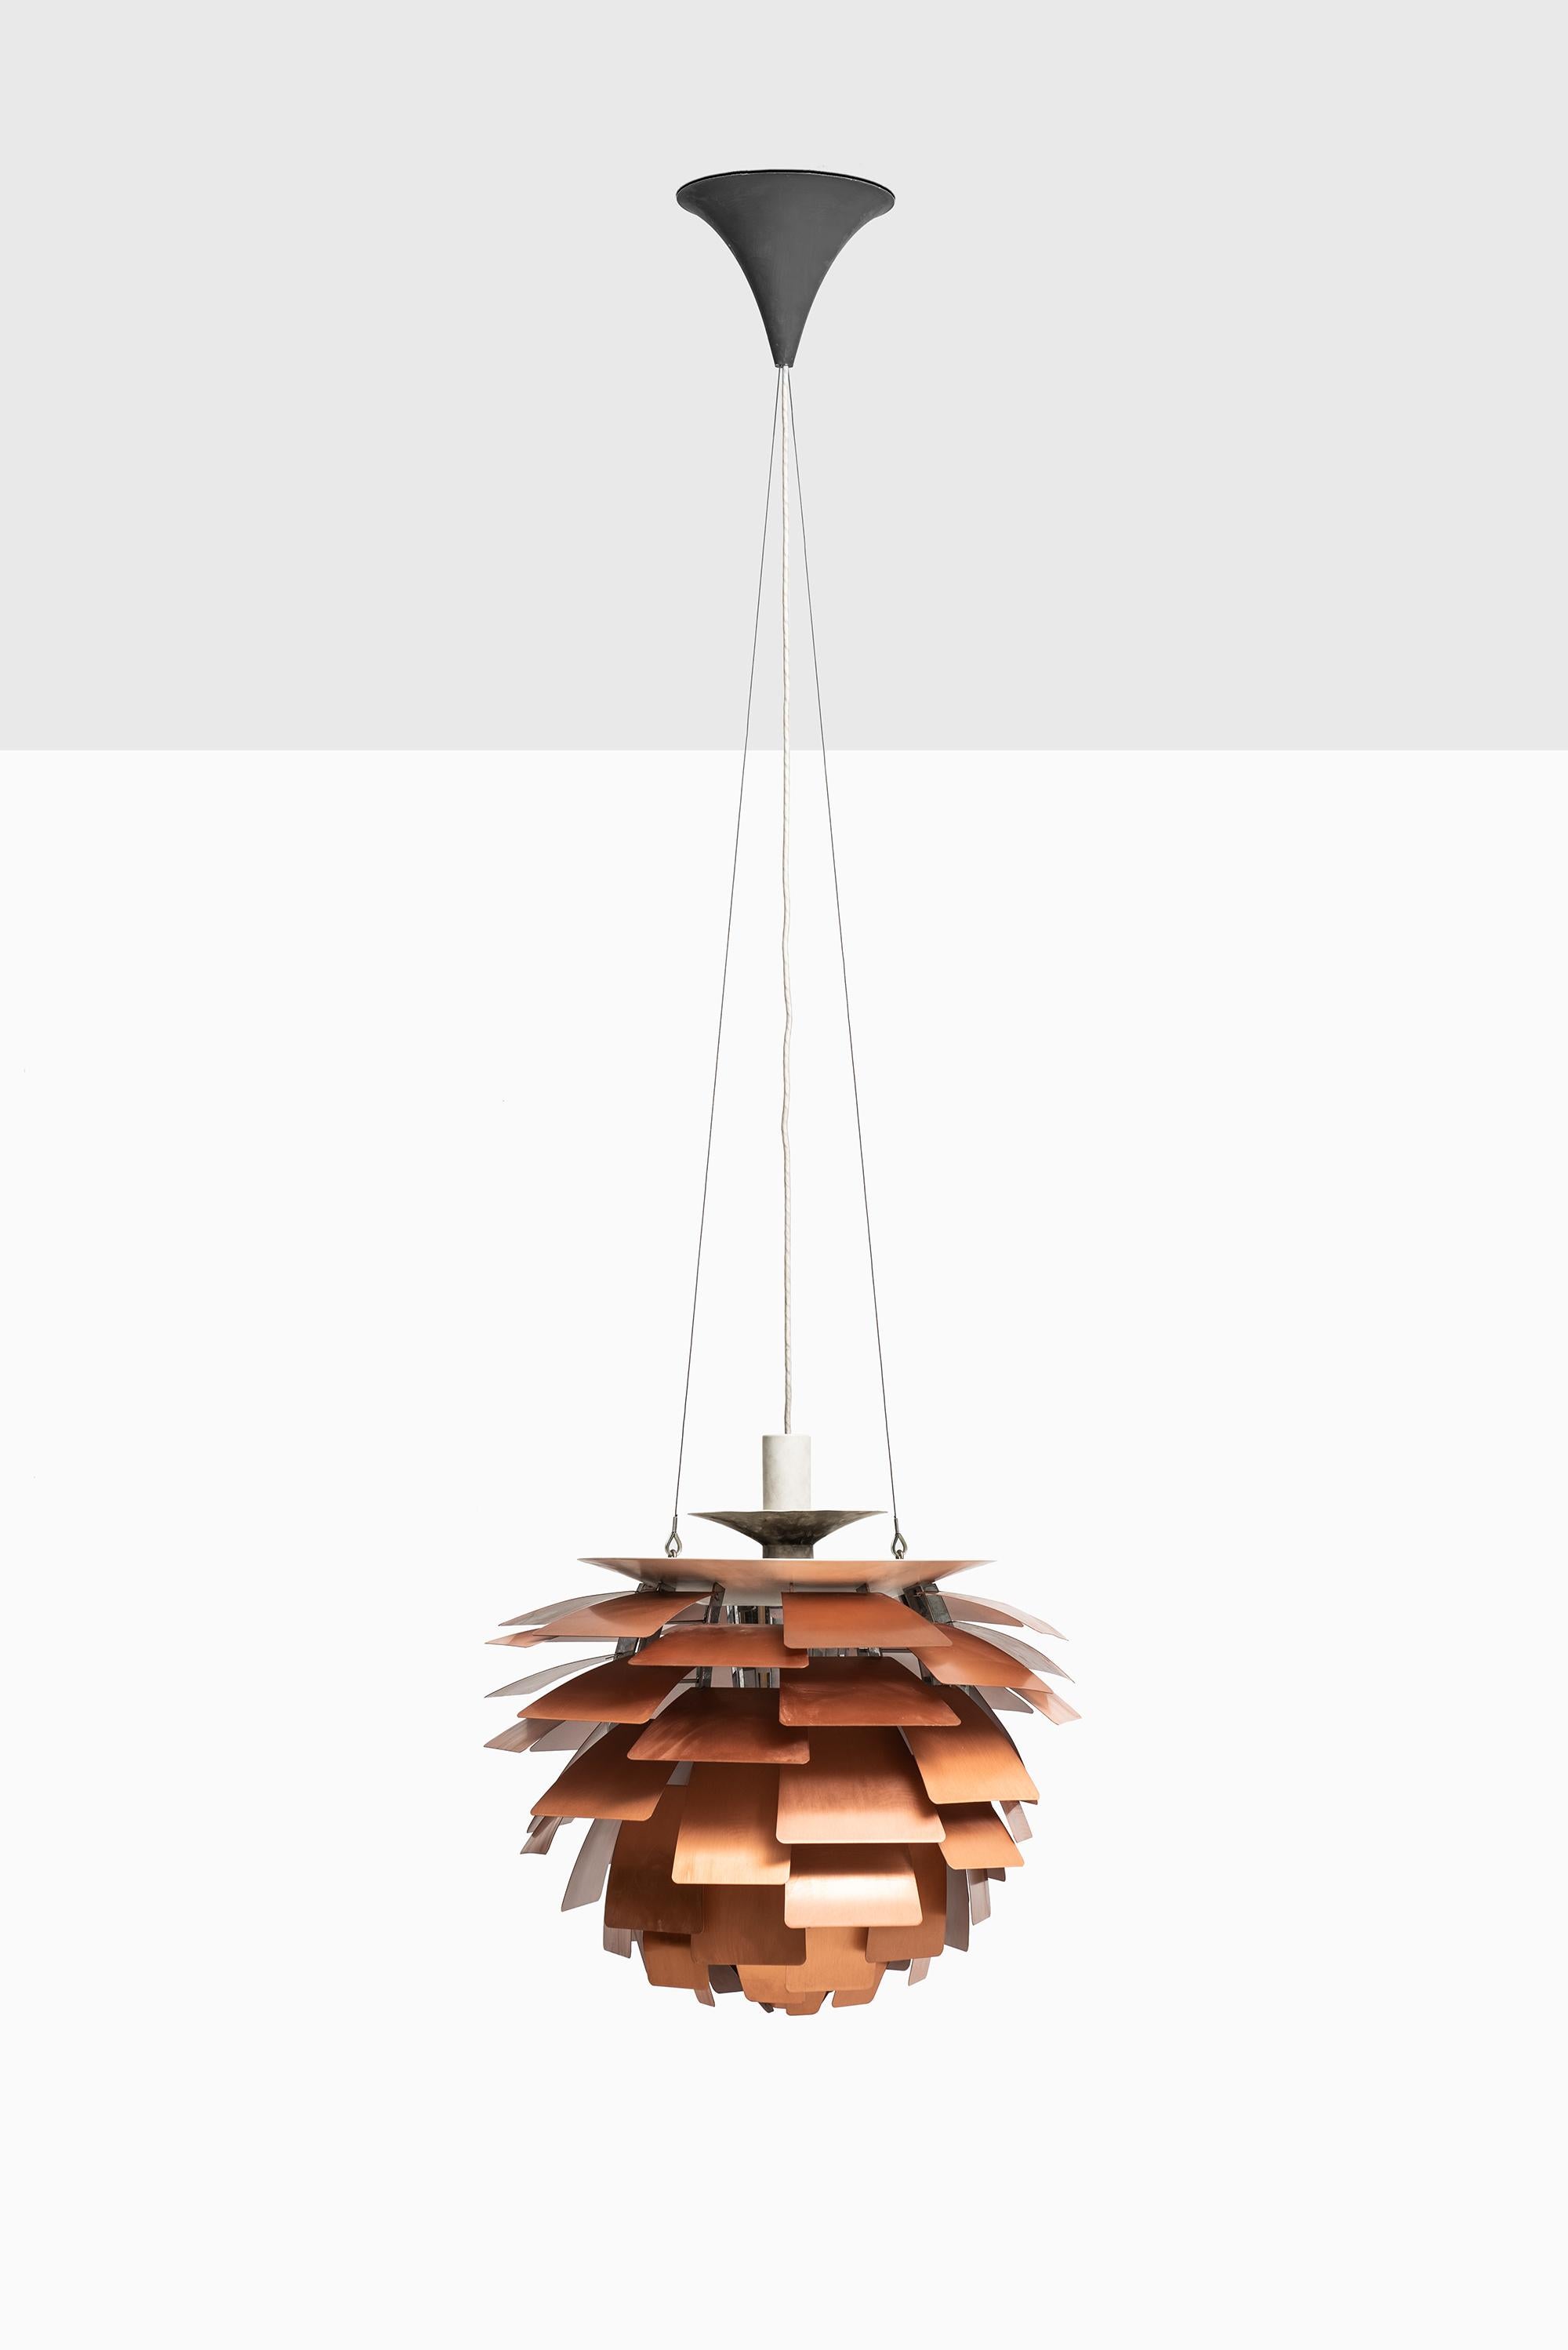 Artichoke ceiling lamp designed by Poul Henningsen. Produced by Louis Poulsen in Denmark.